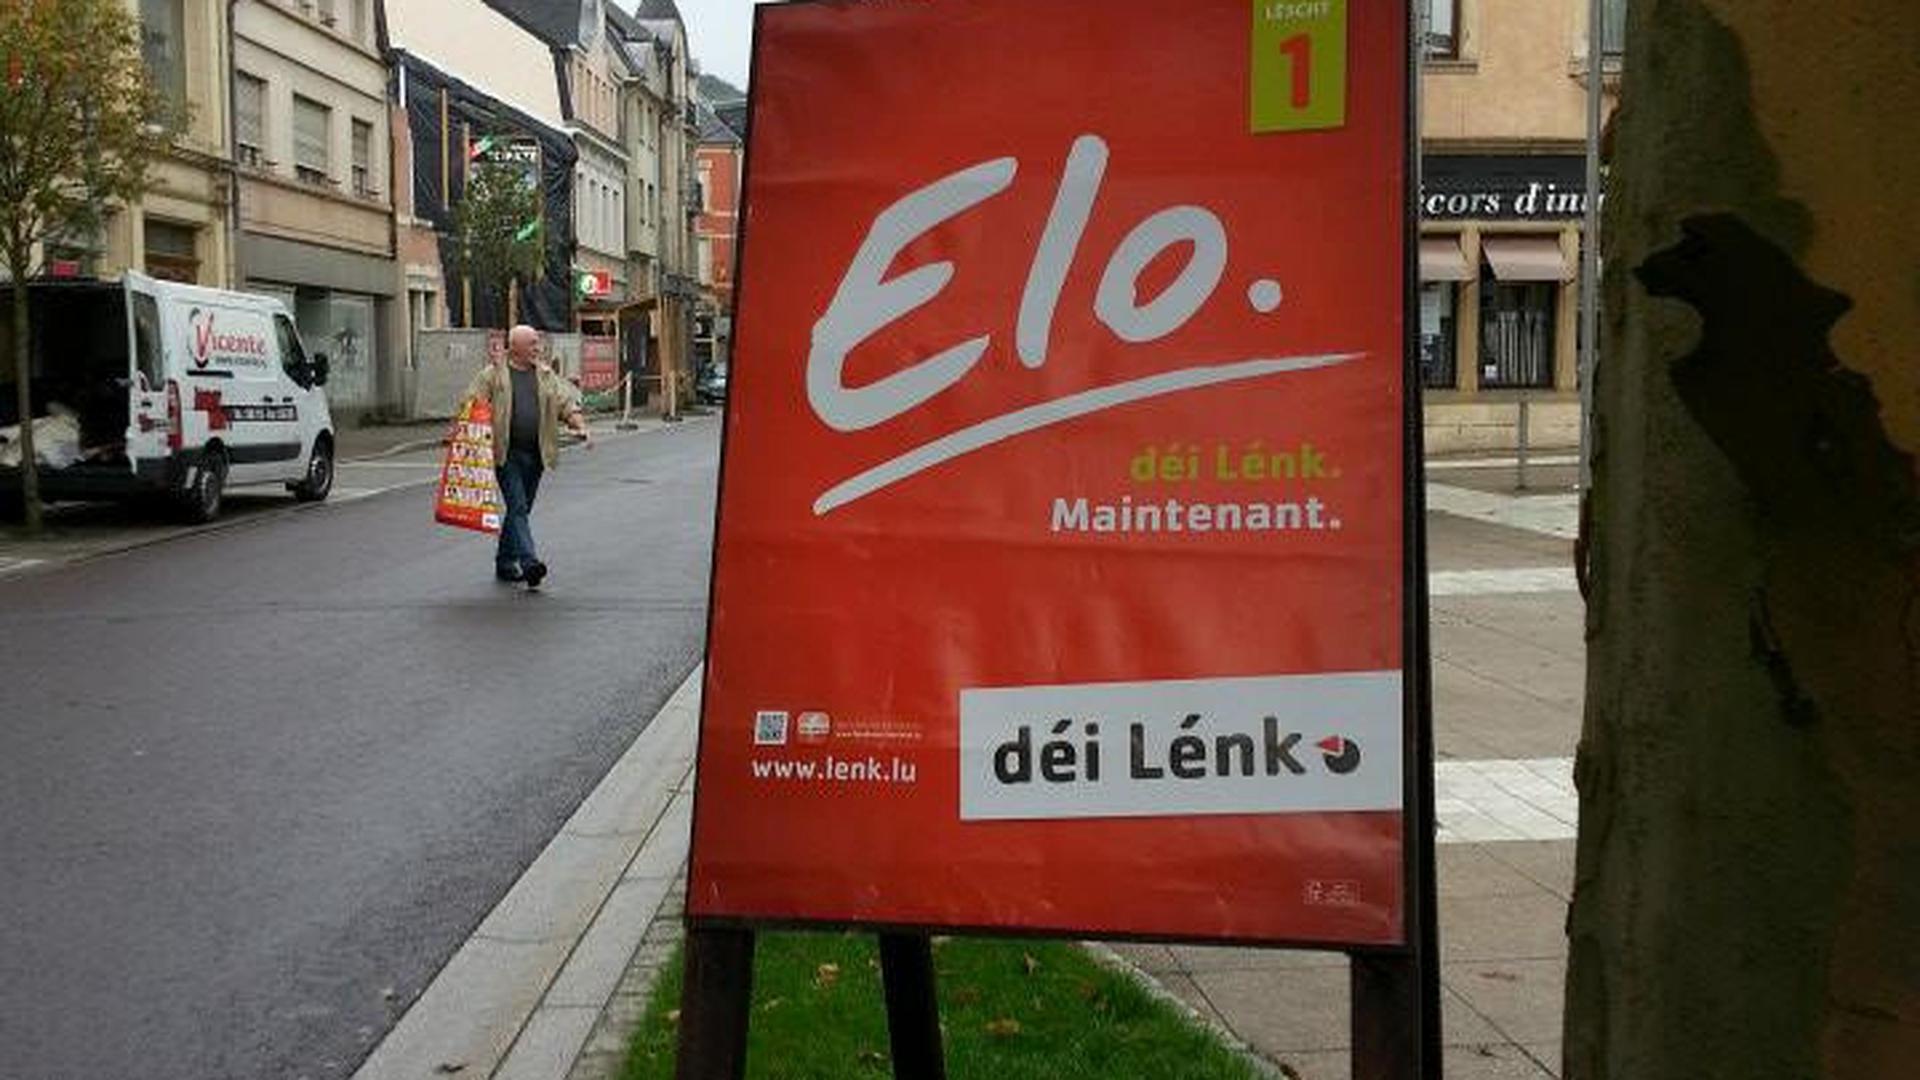 O "Déi Lénk" ("A Esquerda") é o partido equivalente ao Bloco de Esquerda em Portugal, tendo os dois partidos assinado acordos de cooperação. O slogan nestas legislativas é “Elo” ("Agora", em luxemburguês), que aparece também traduzido em francês ("Maintenant"). Caso único na campanha.